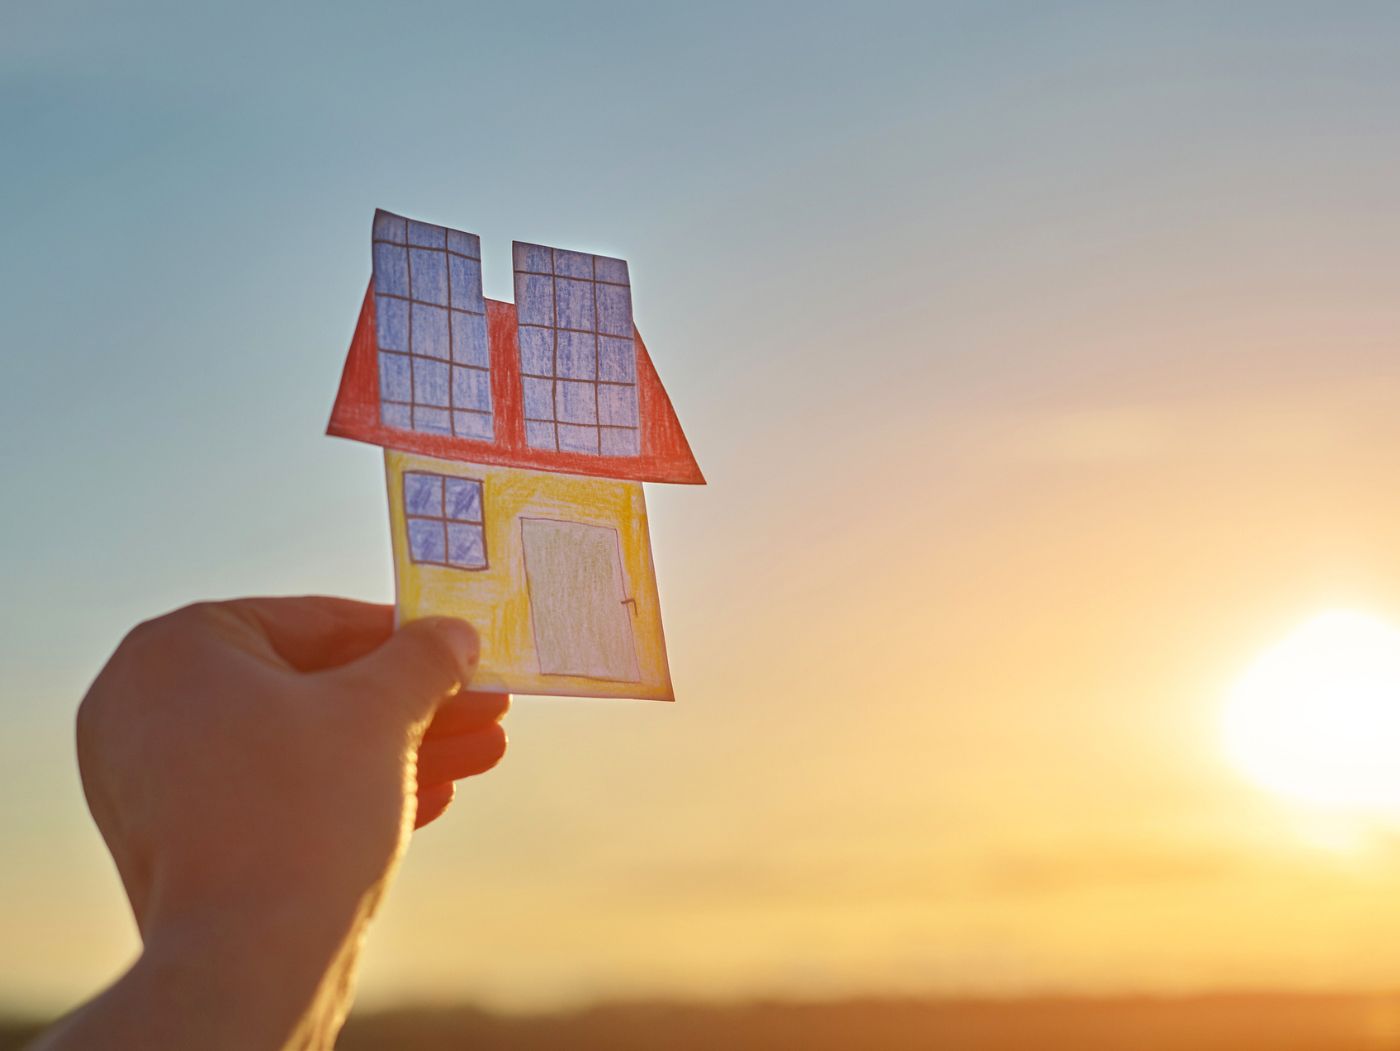 Imagen de una mano sujetando un dibujo de una casa con energía solar en el techo, De fondo el sol atardeciendo o amaneciendo